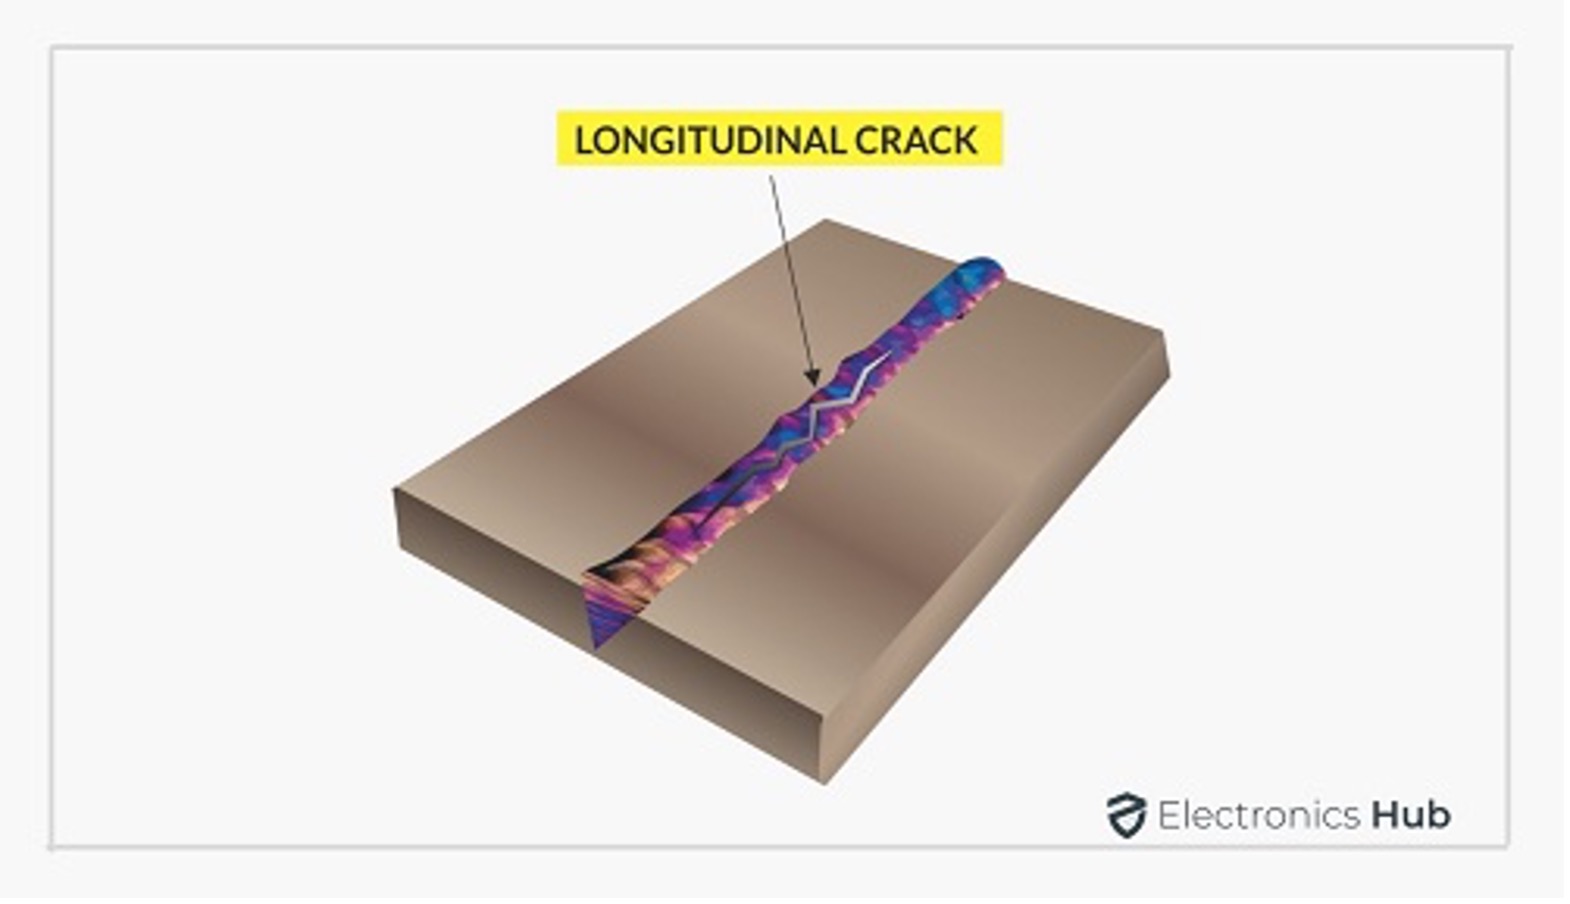 cold cracking longitudinal crack explained